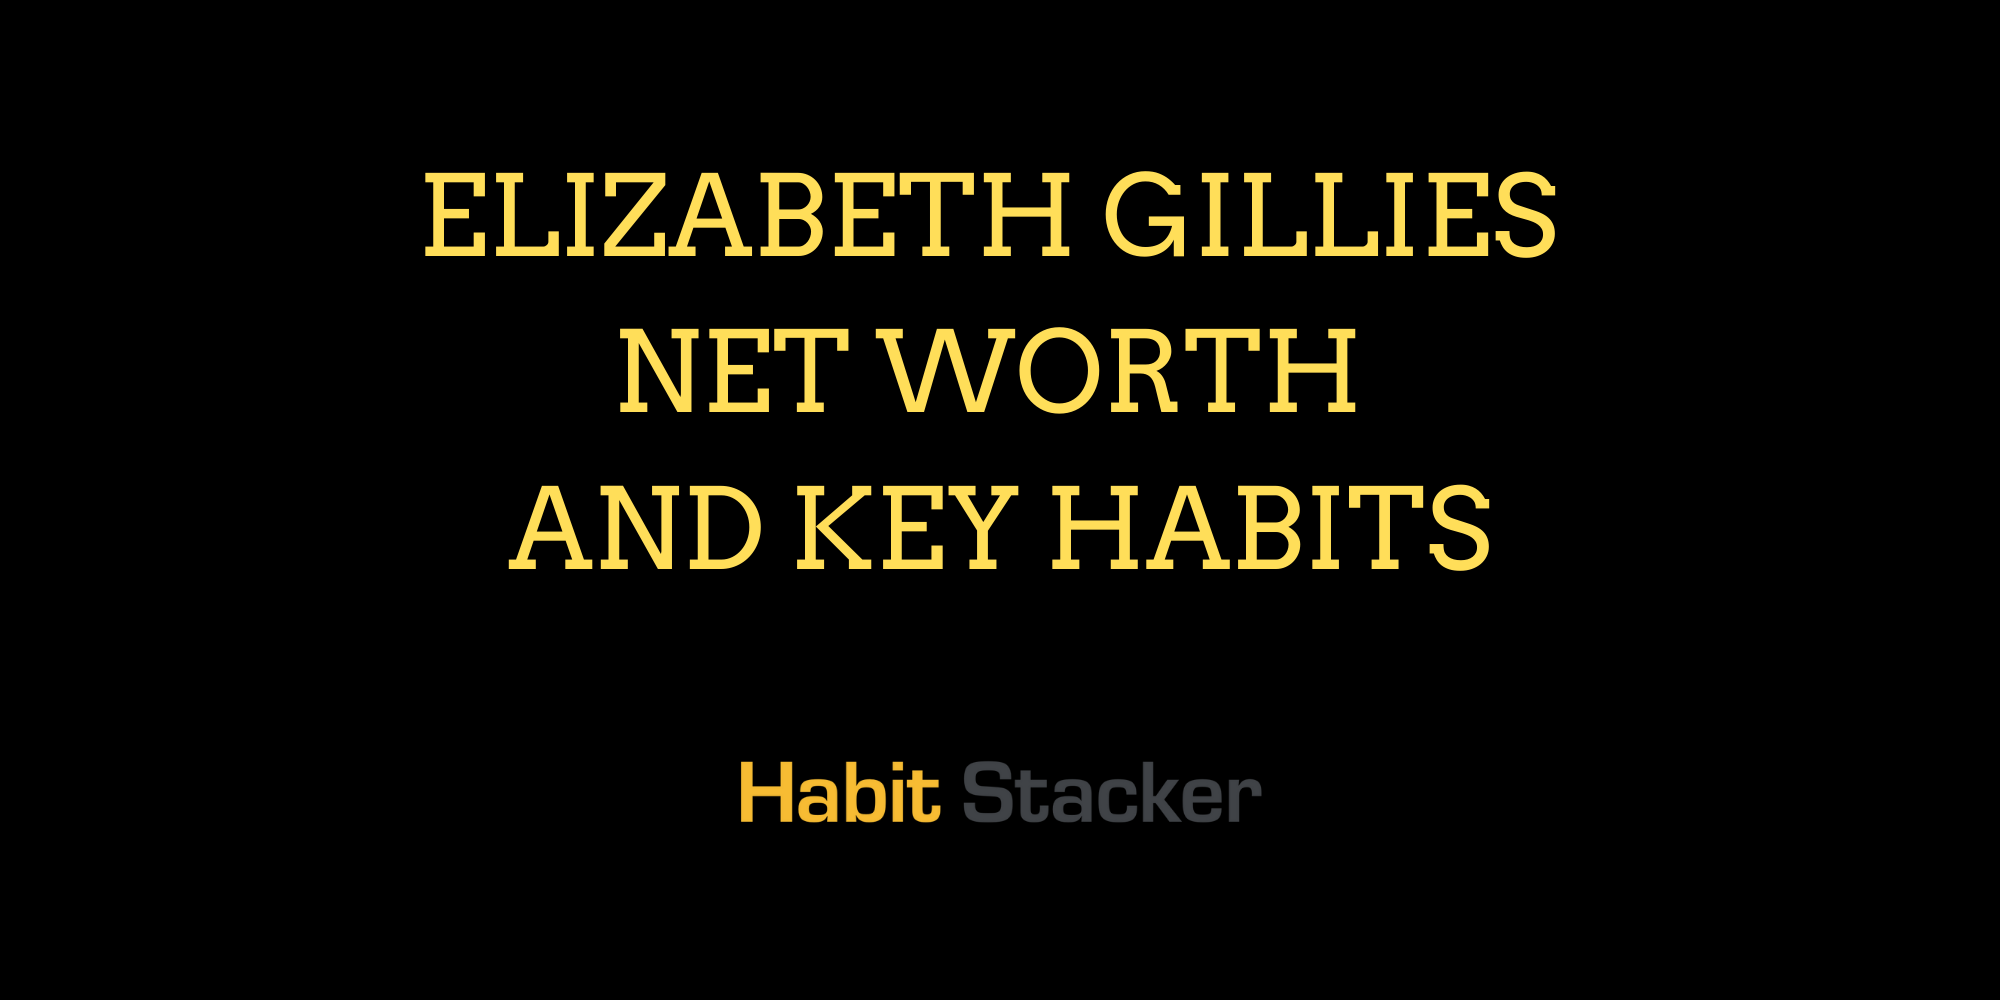 Elizabeth Gillies Net Worth and Key Habits